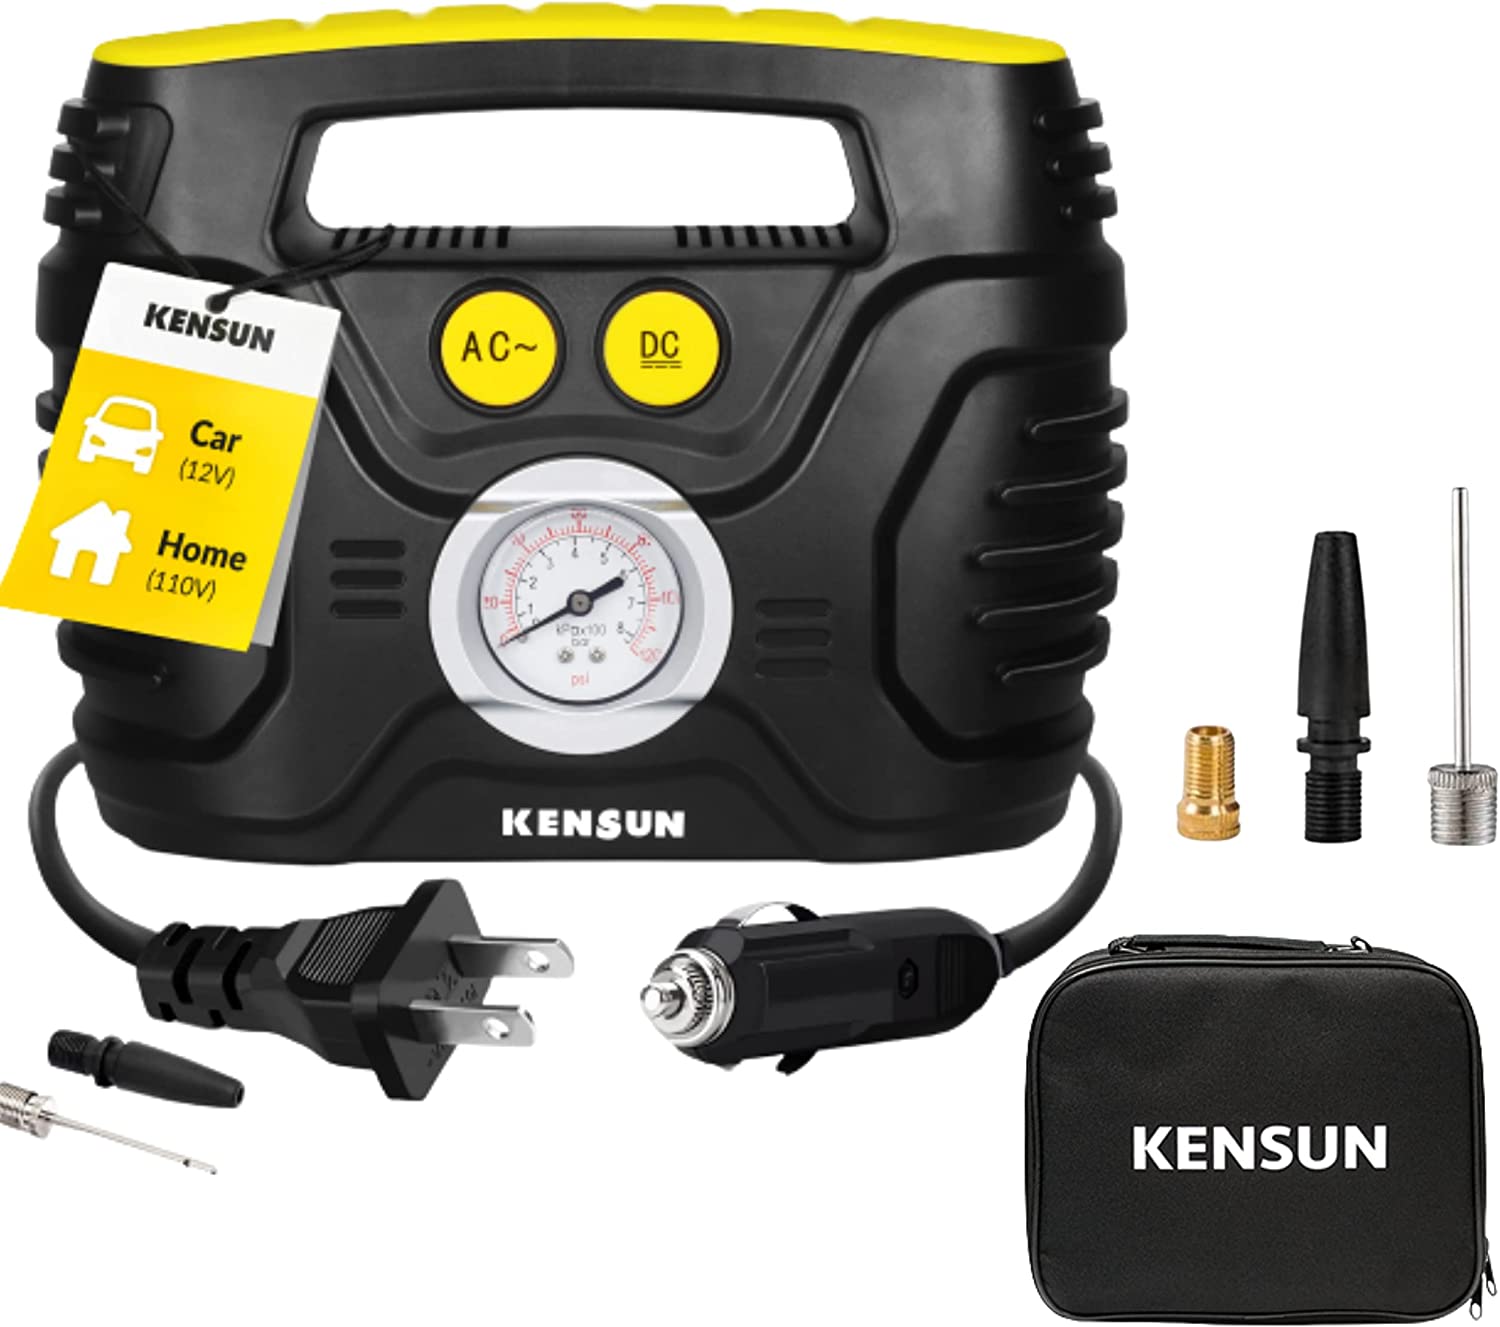 Kensun 110V Ultra Fast Portable Air Compressor Pump, 100-PSI